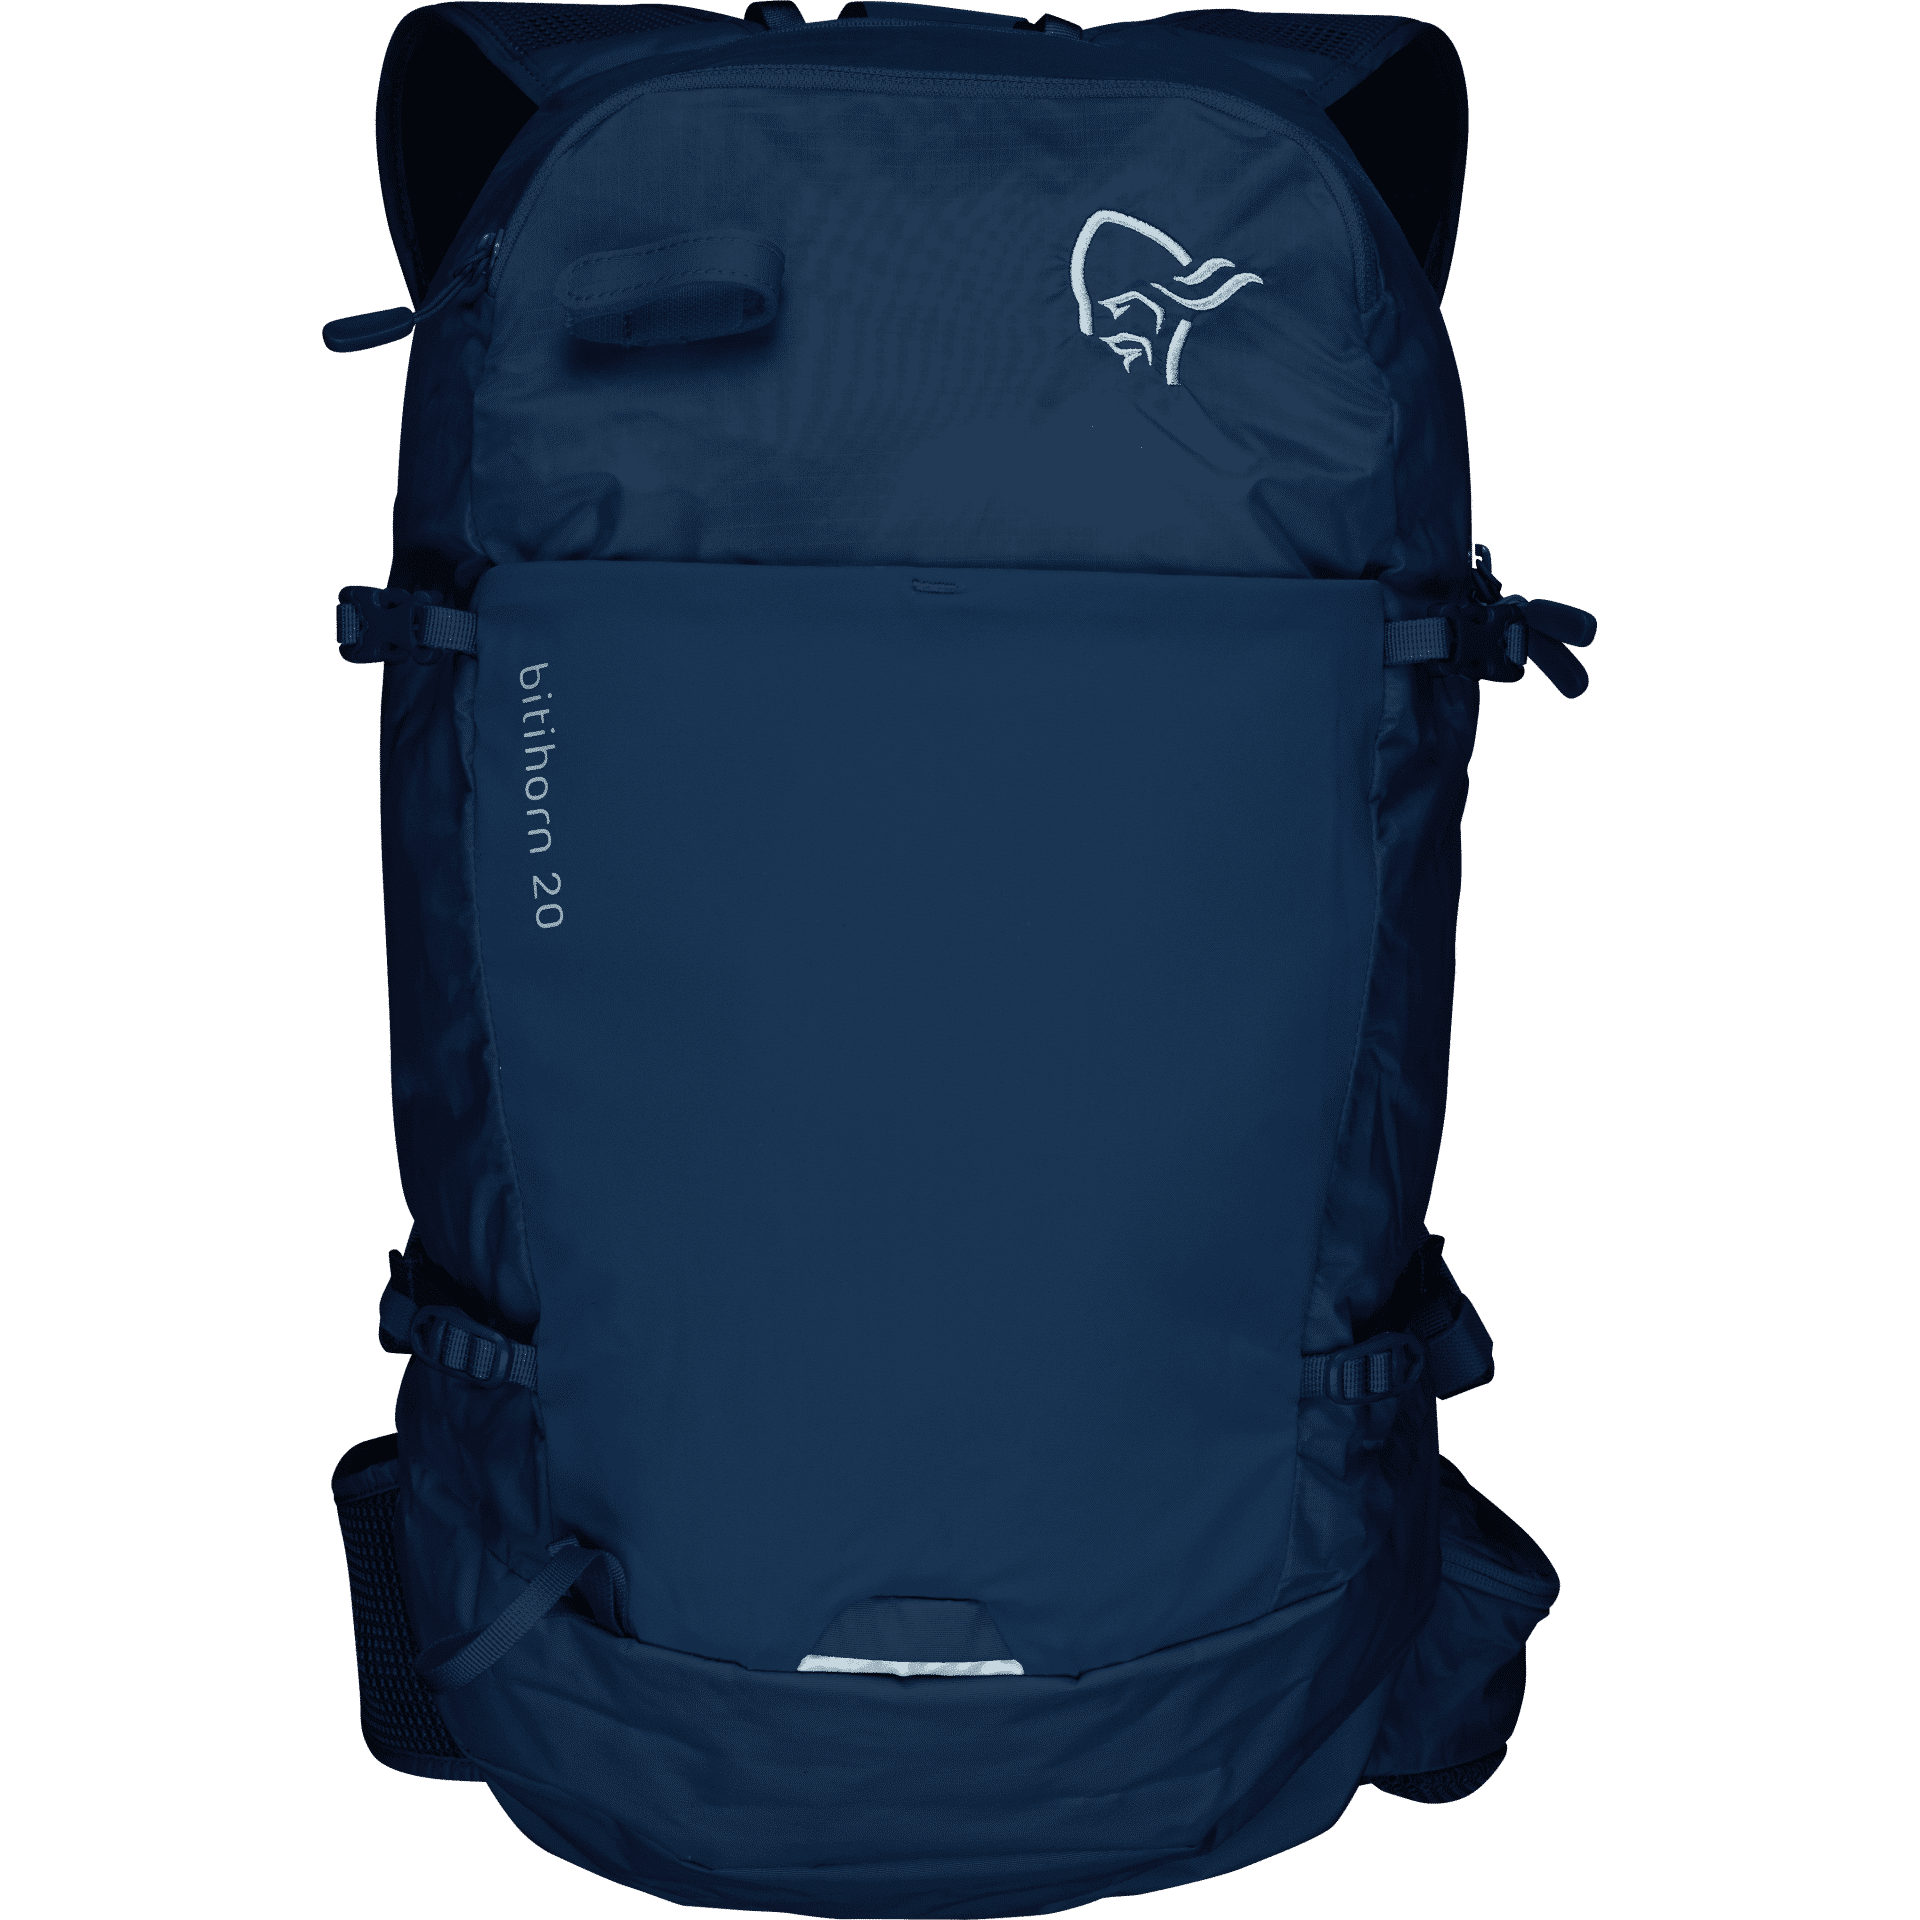 Nørrona Bitihorn 20L Pack - Hiking backpack